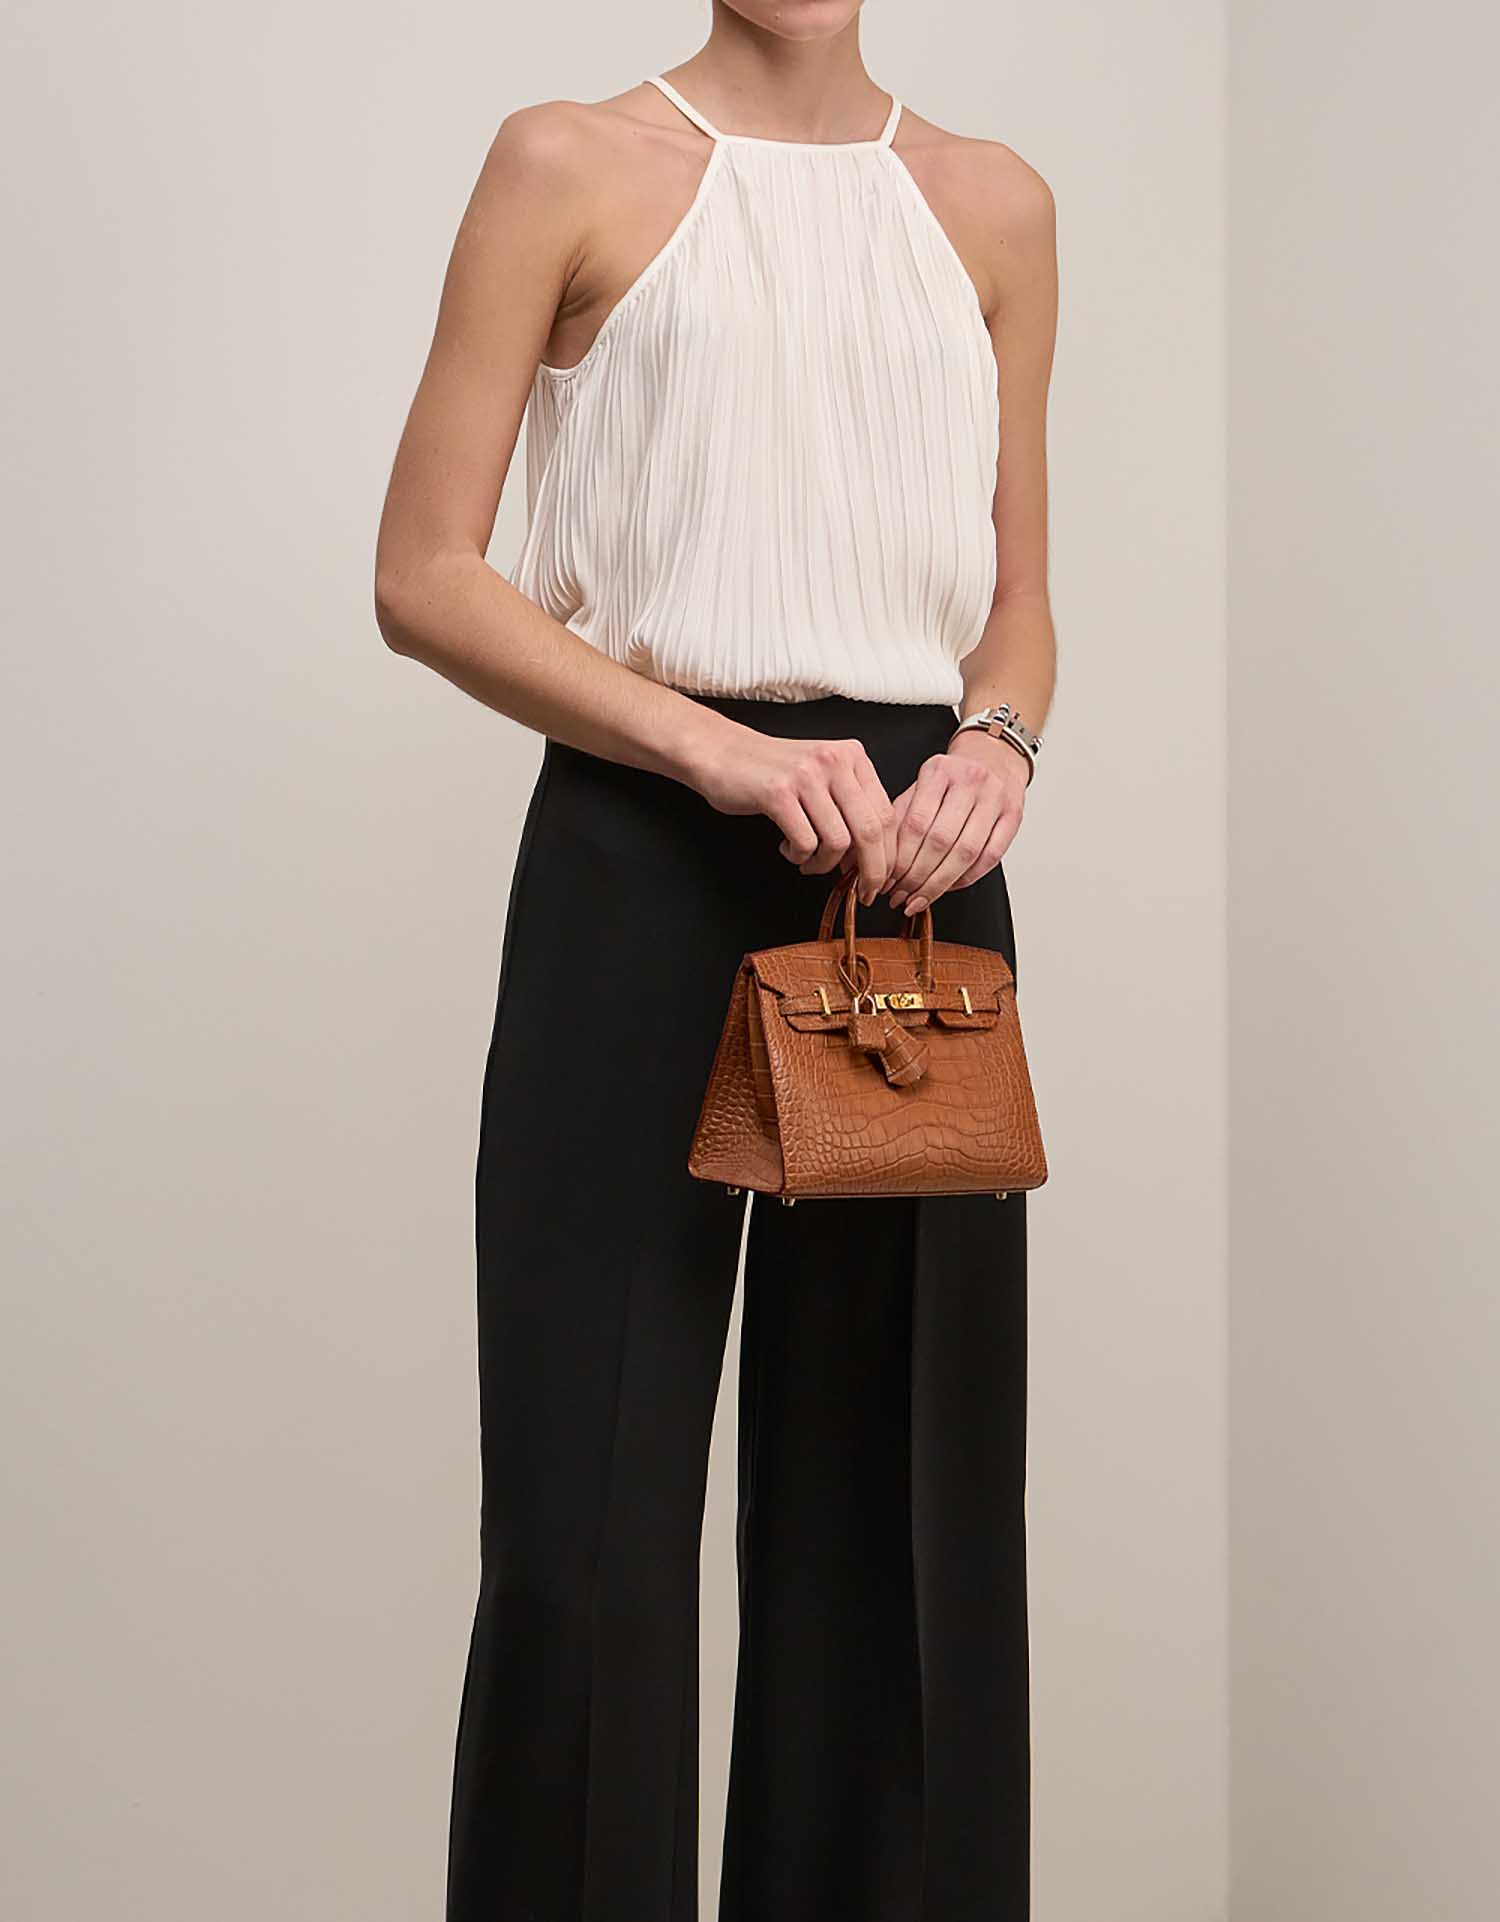 Hermès Birkin 20 Gold auf Model | Verkaufen Sie Ihre Designertasche auf Saclab.com